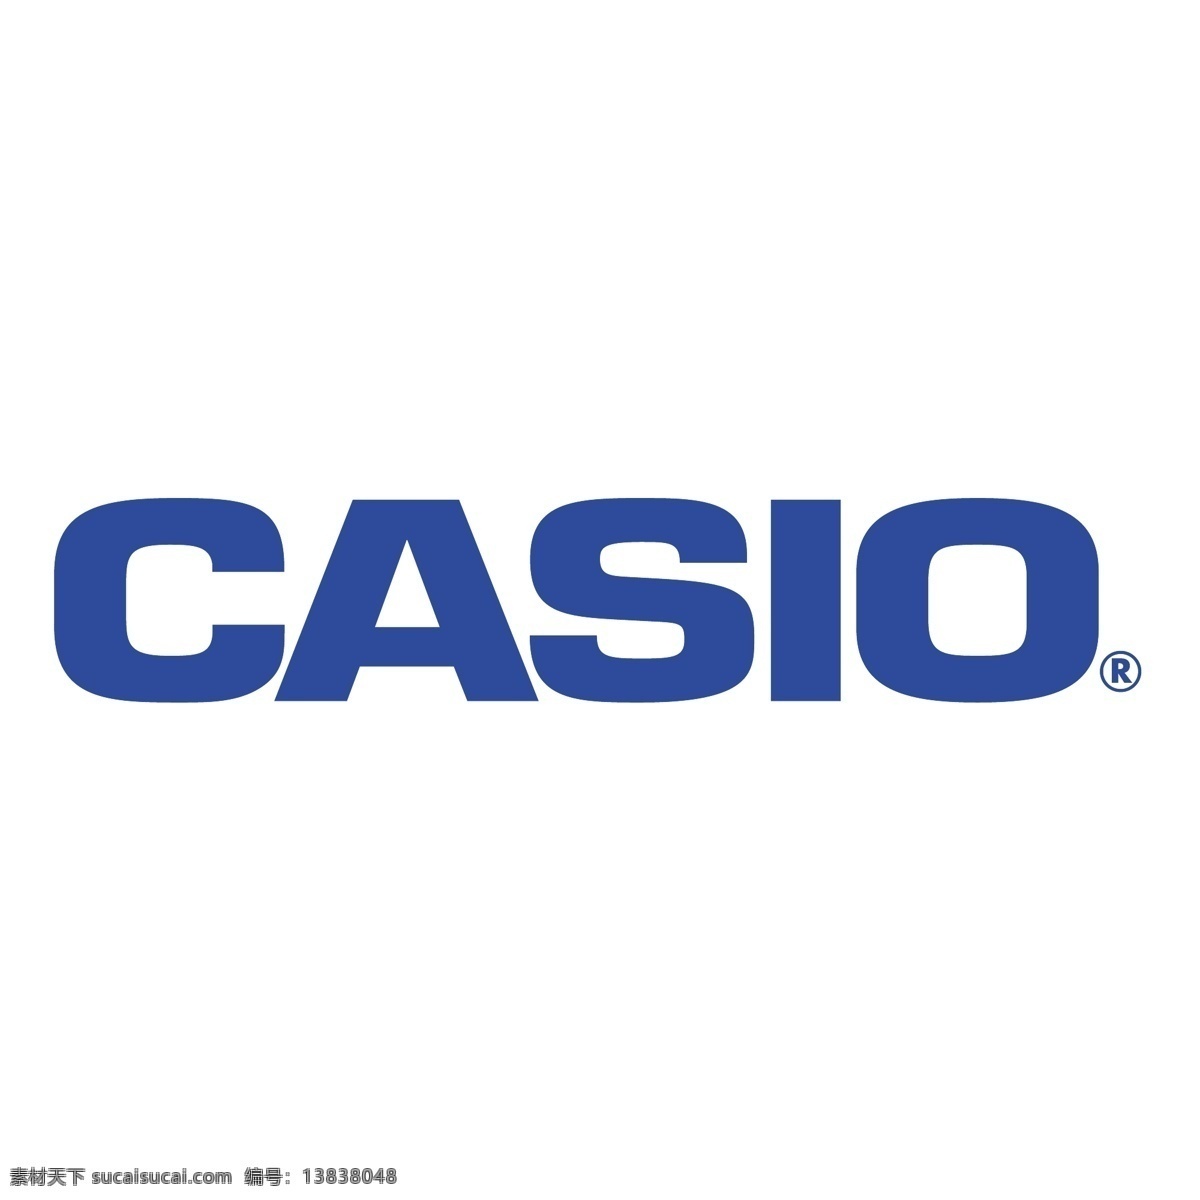 卡西欧0 卡西欧 标志 logo 矢量 卡西欧手表 卡西欧的标志 矢量卡西欧 自由 g冲击卡西欧 免费 矢量图 建筑家居